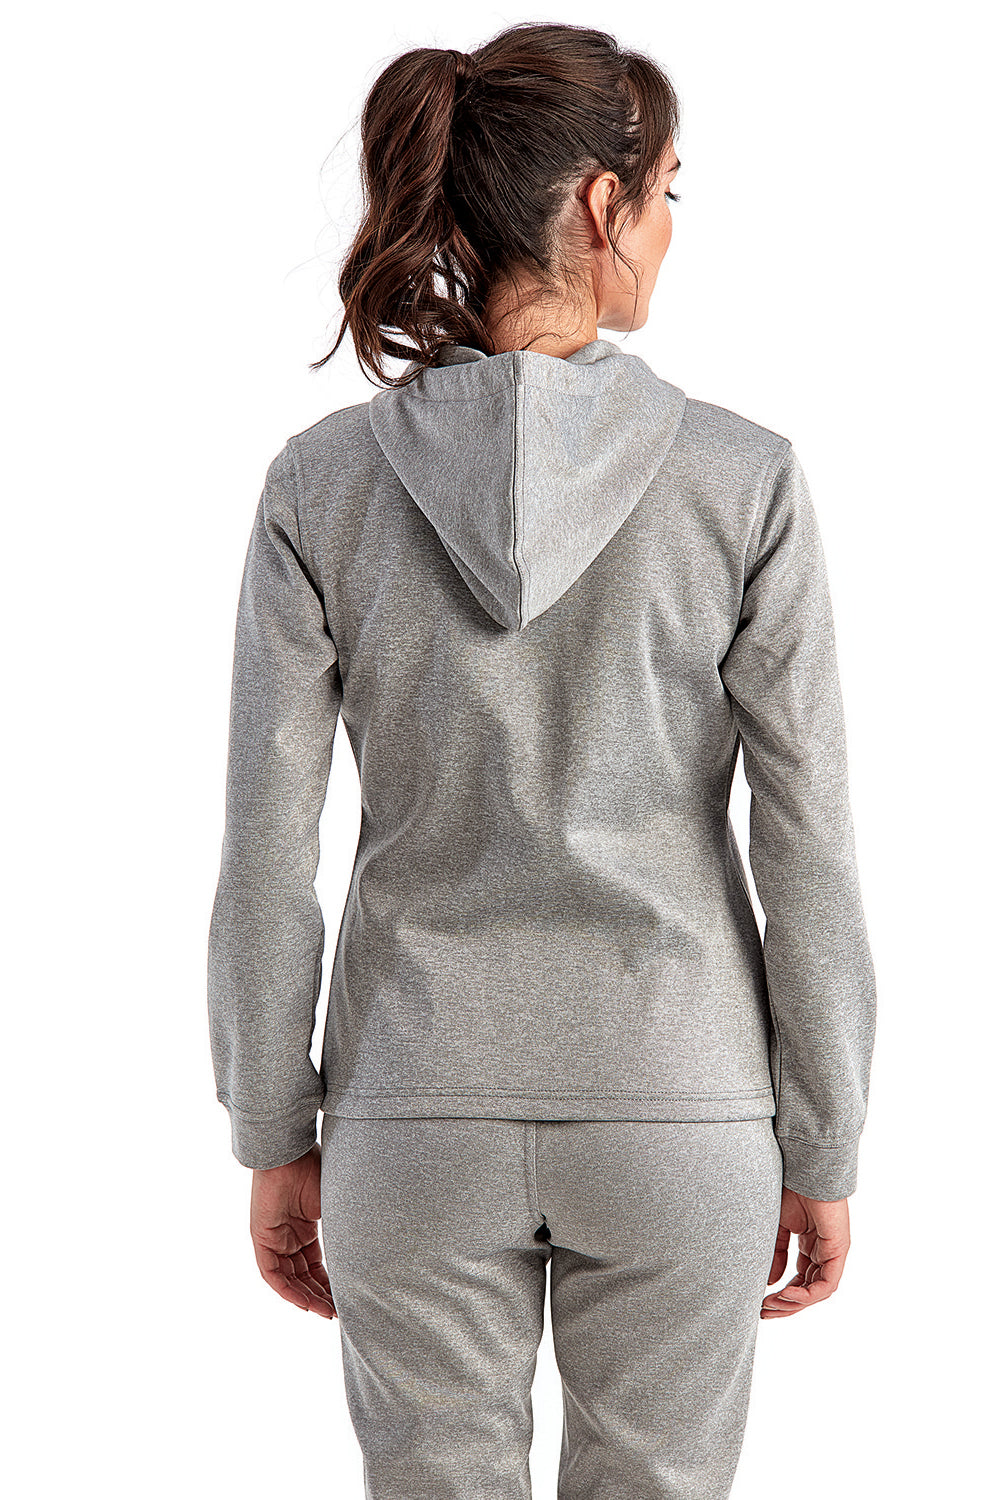 TriDri TD498 Womens Moisture Wicking Full Zip Hooded Sweatshirt Hoodie Grey Melange Back